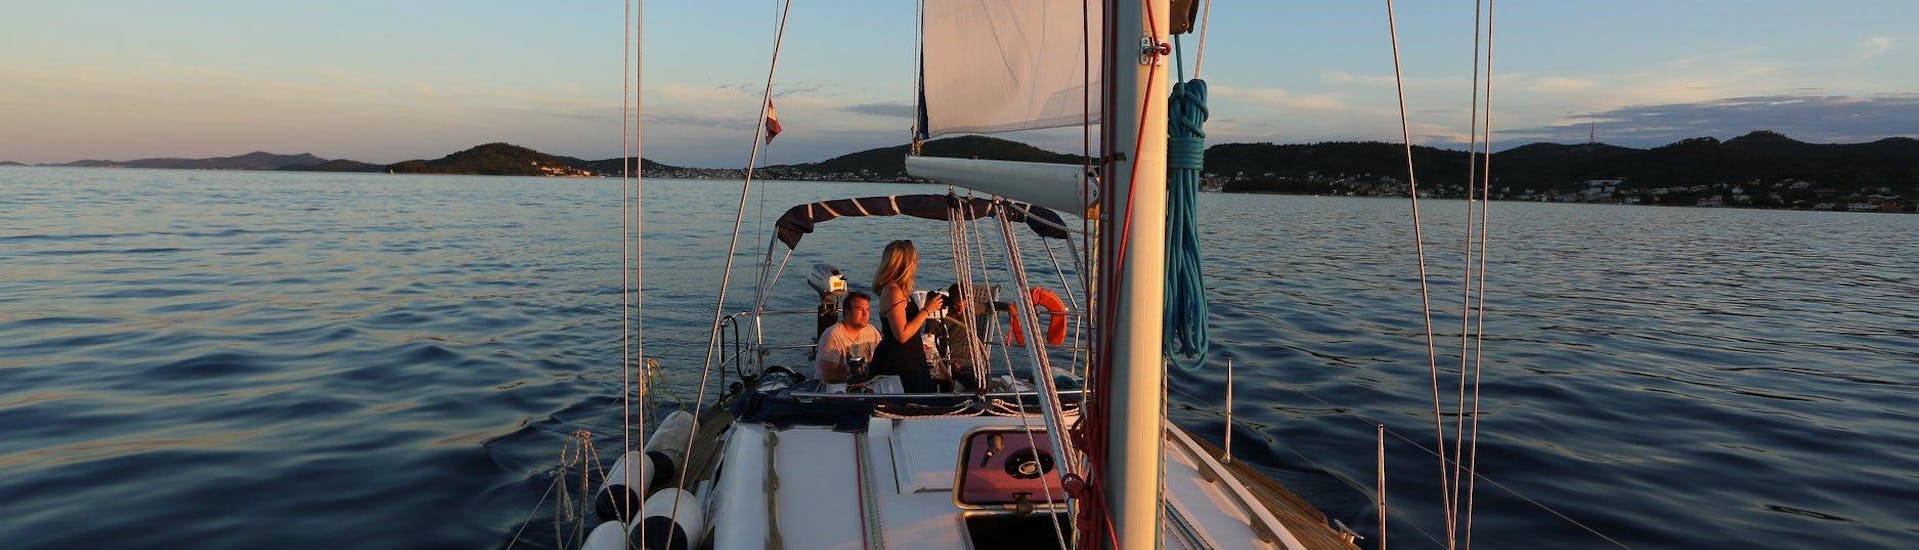 Yacht durante la gita romantica privata in barca a vela al tramonto a Zadar The Day Sail.